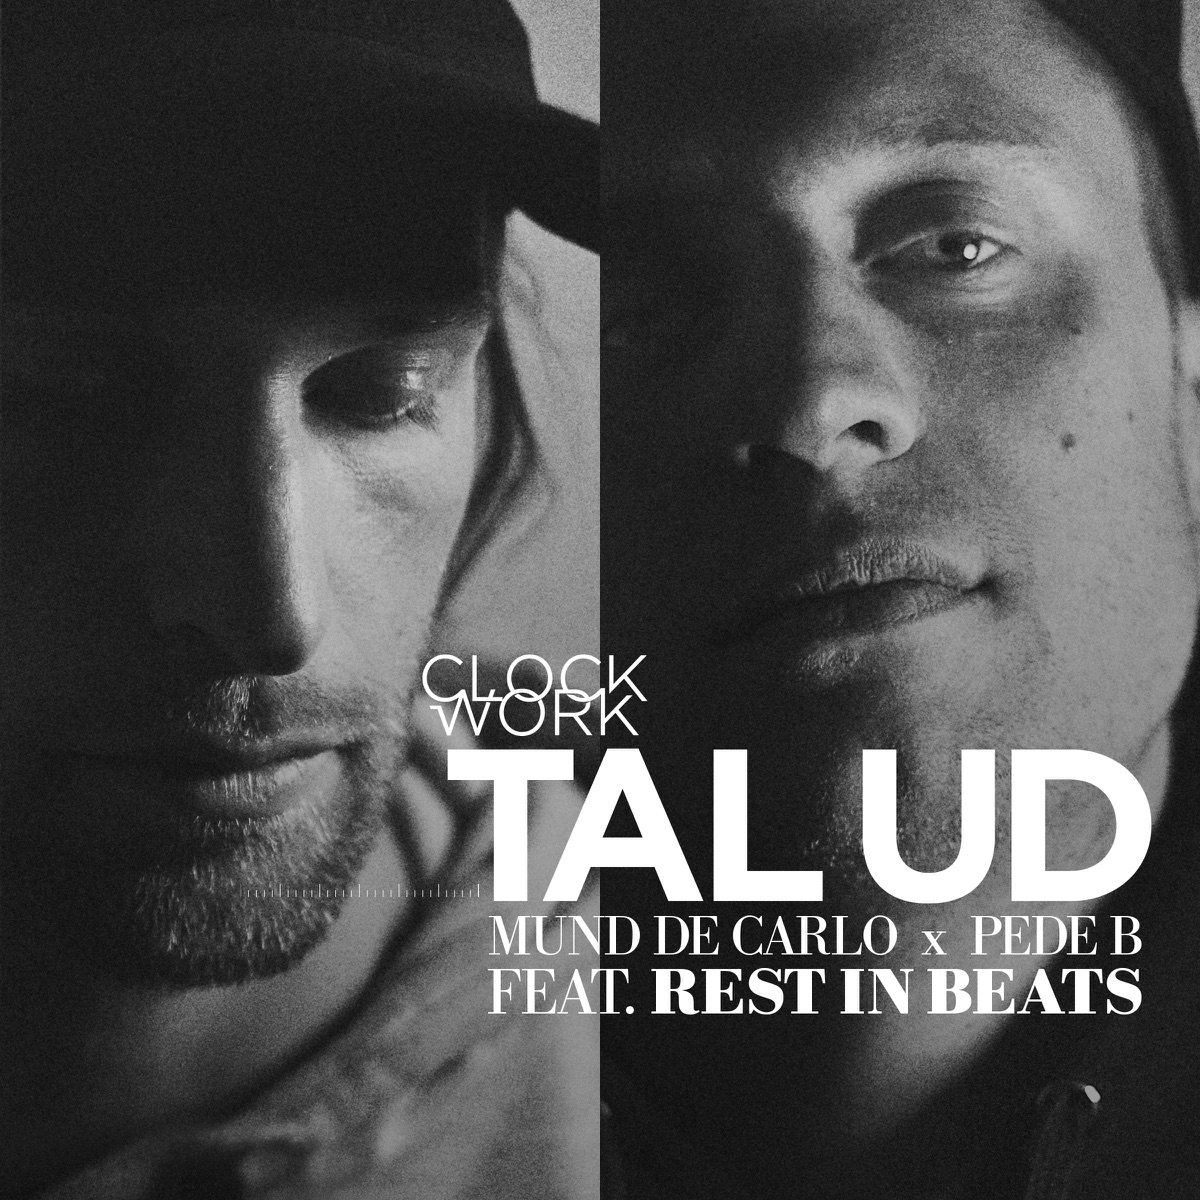 Tal Ud ft. Rest in (feat. Rest in Pede & Mund De Carlo) - Single by Clockwork on Apple Music